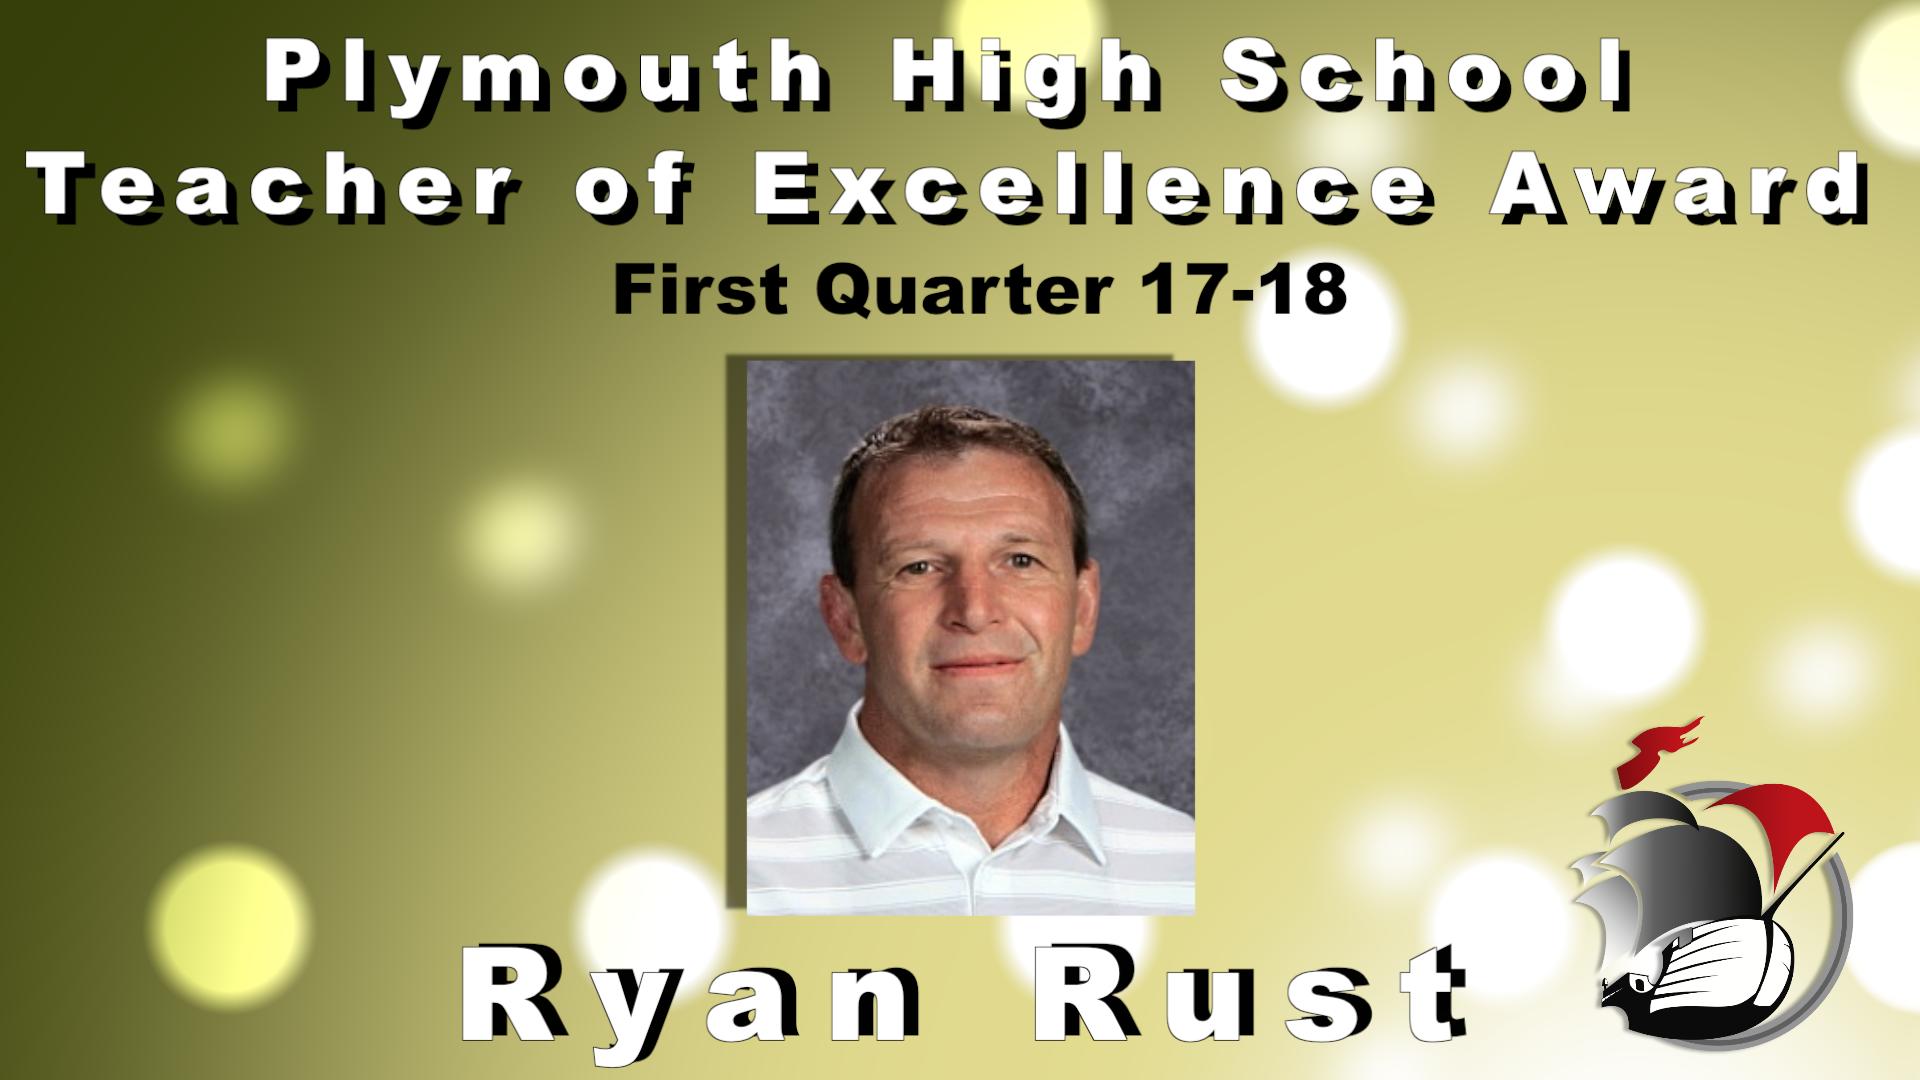 Plymouth High School Teacher of Excellence Award First Quarter 17-18 Ryan Rust